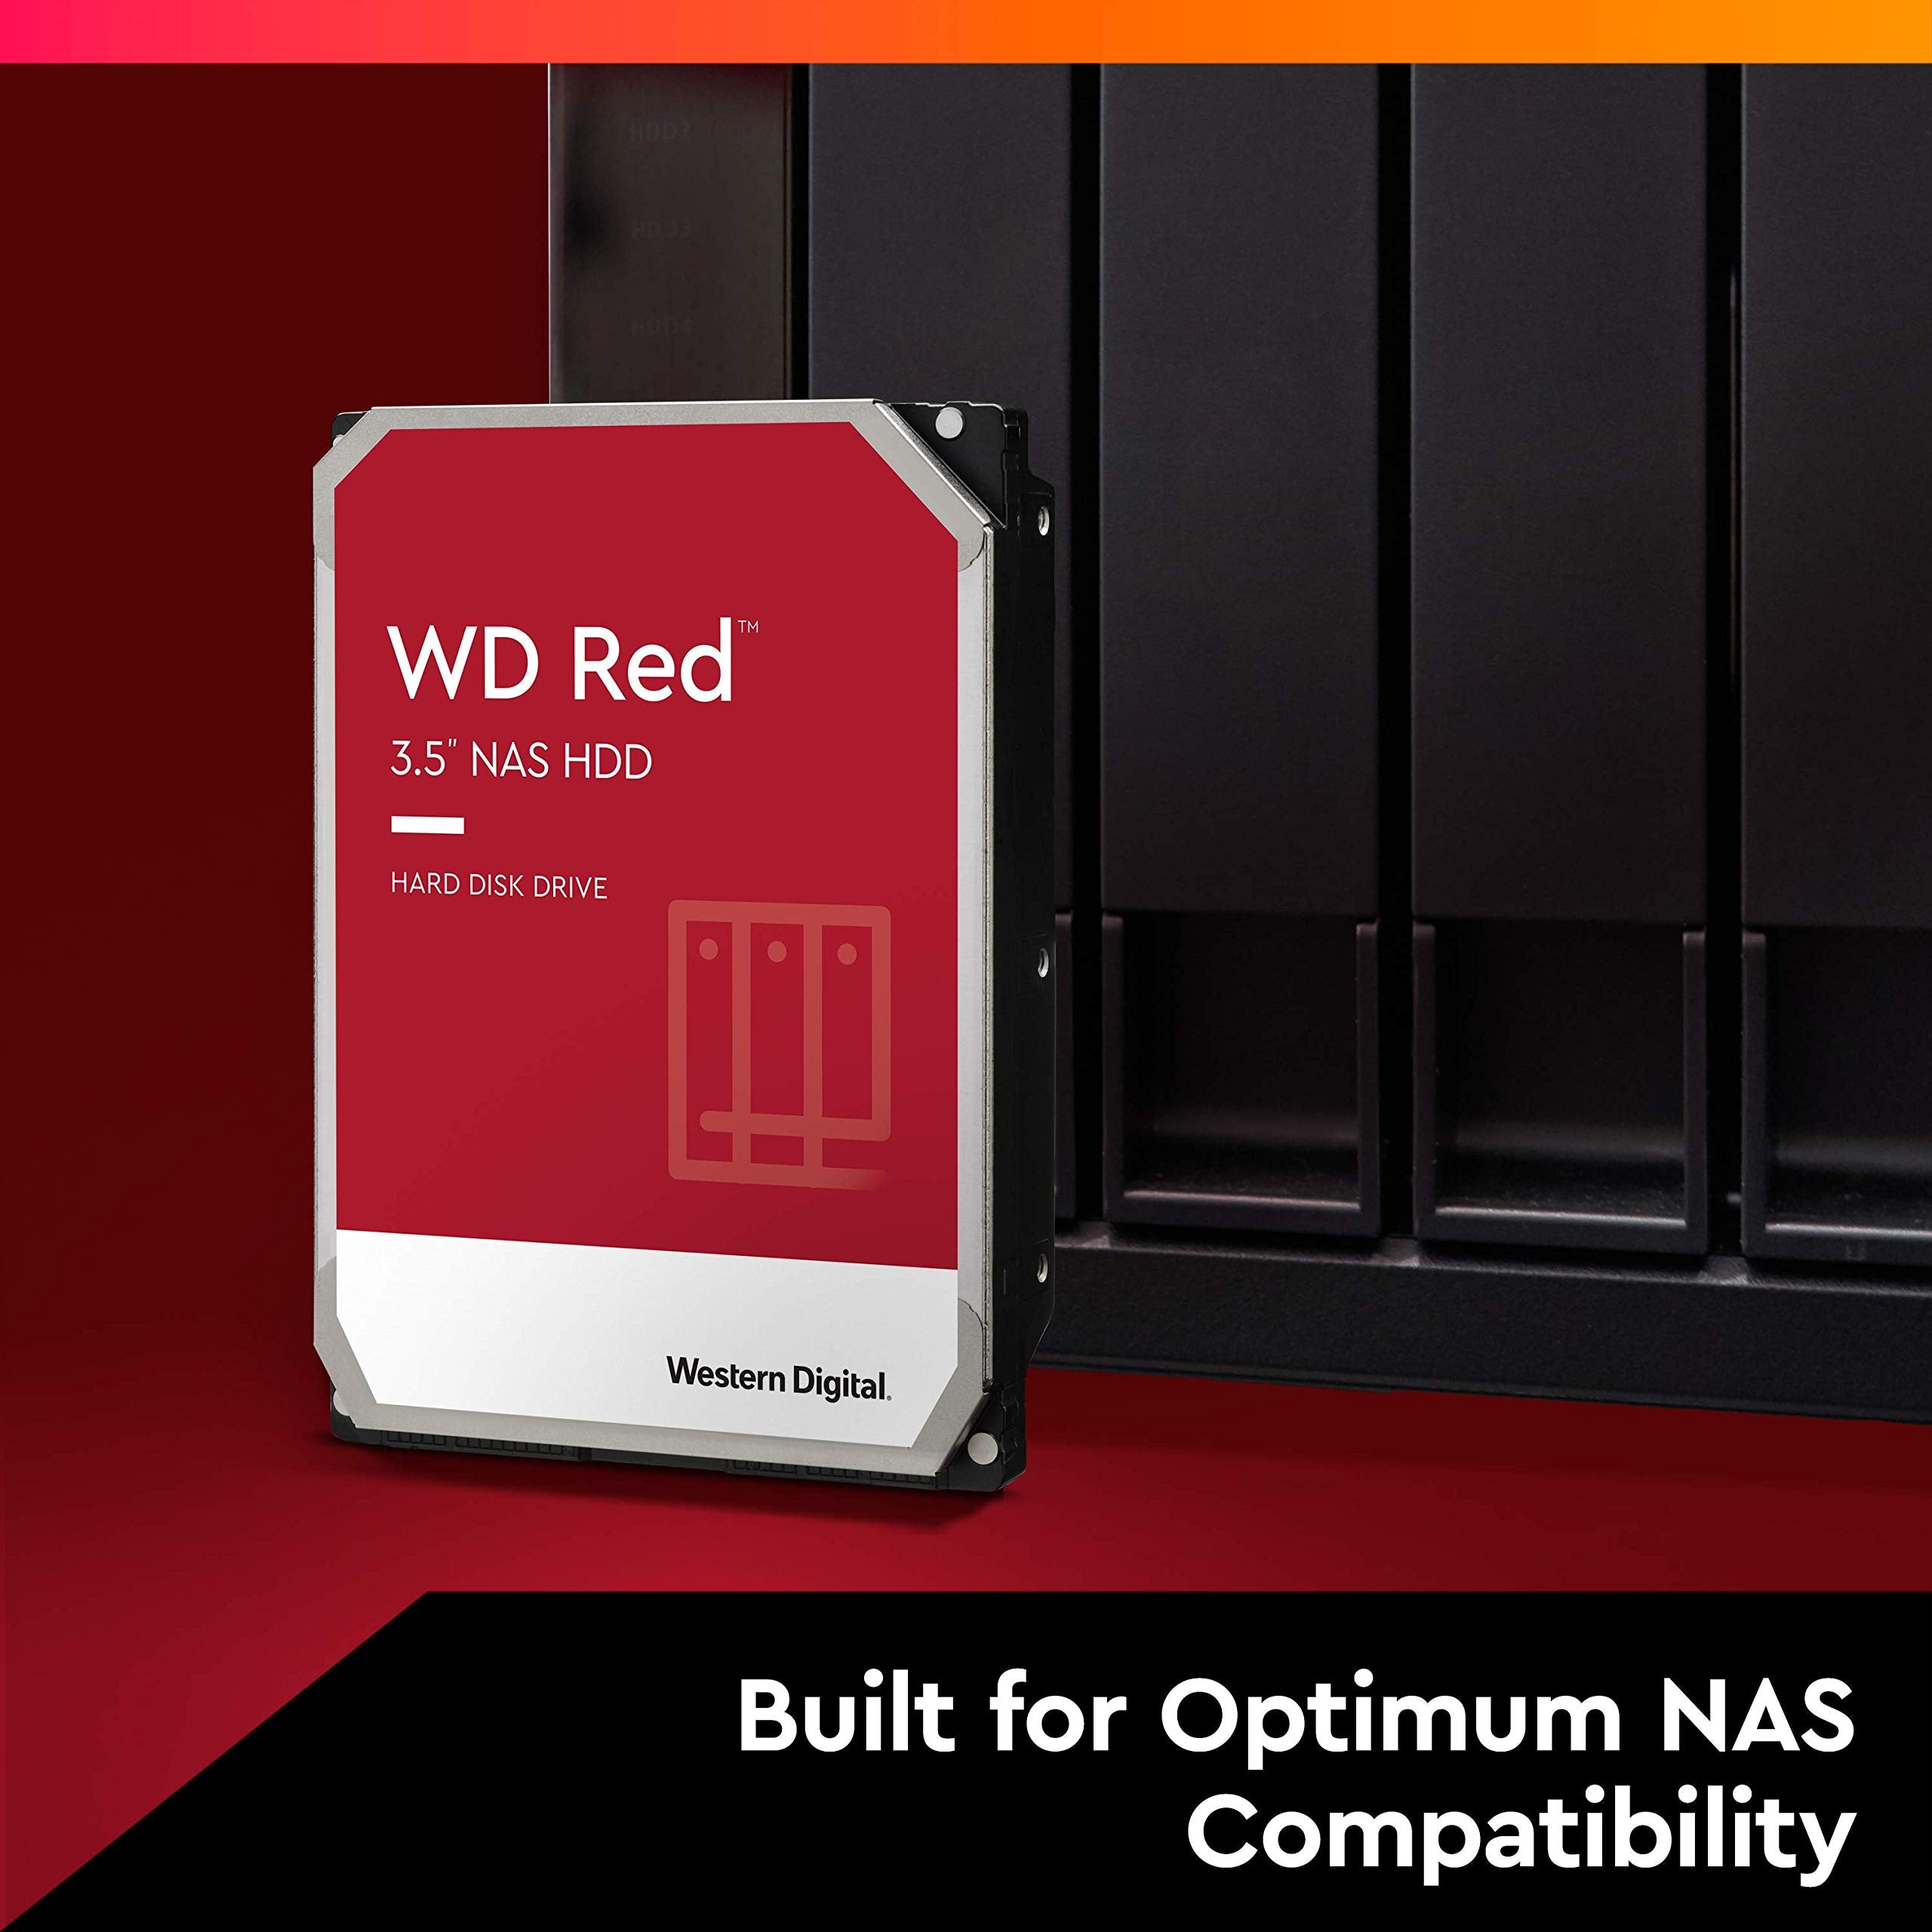 Western Digital 6TB WD Red NAS Internal Hard Drive HDD - 5400 RPM, SATA 6 Gb/s, 256MB Cache, 3.5"